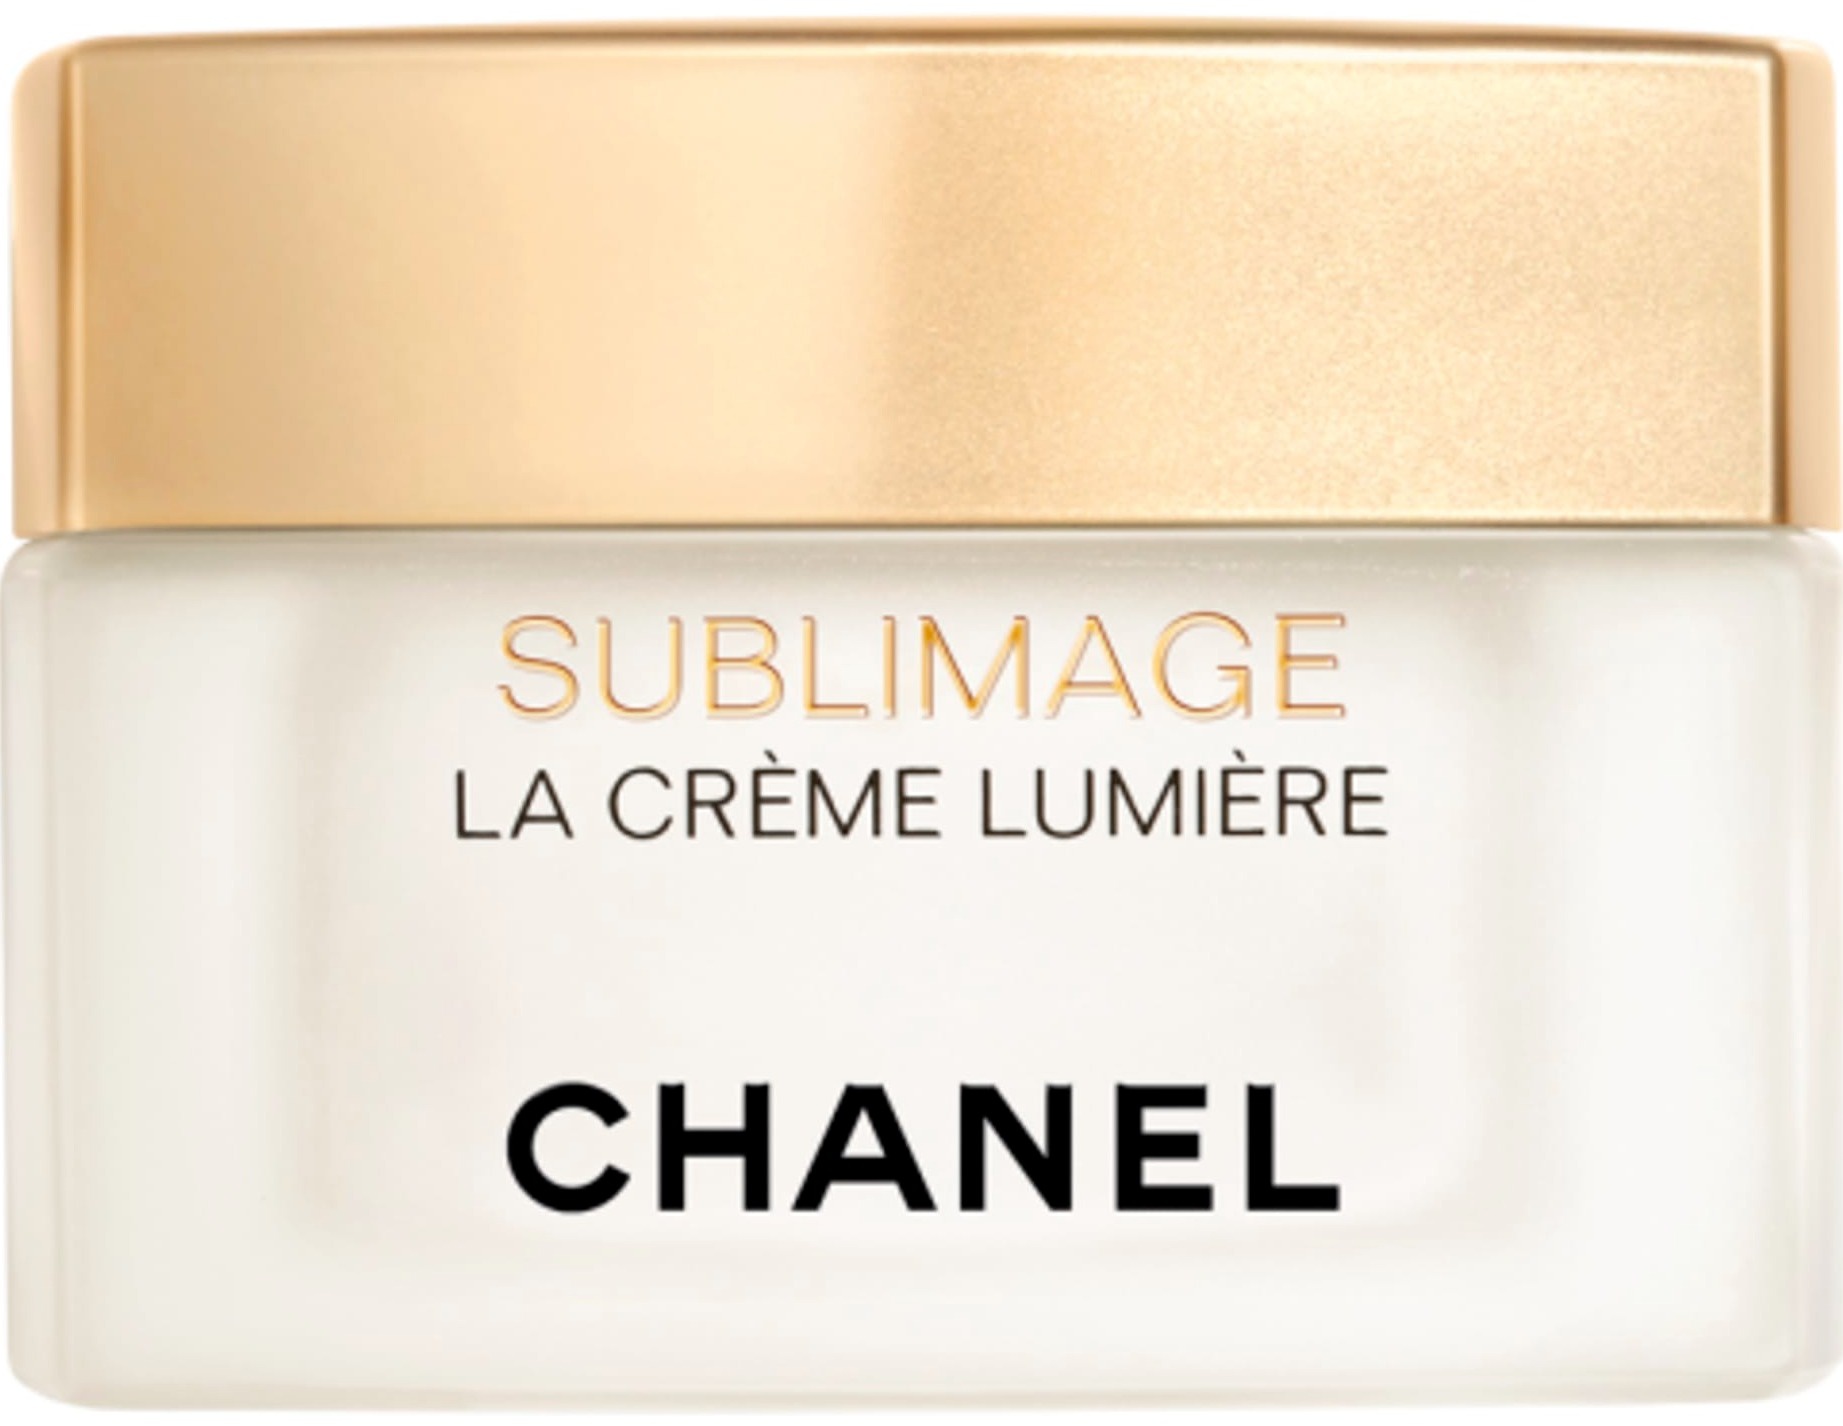 Chanel Sublimage La Crème Lumière